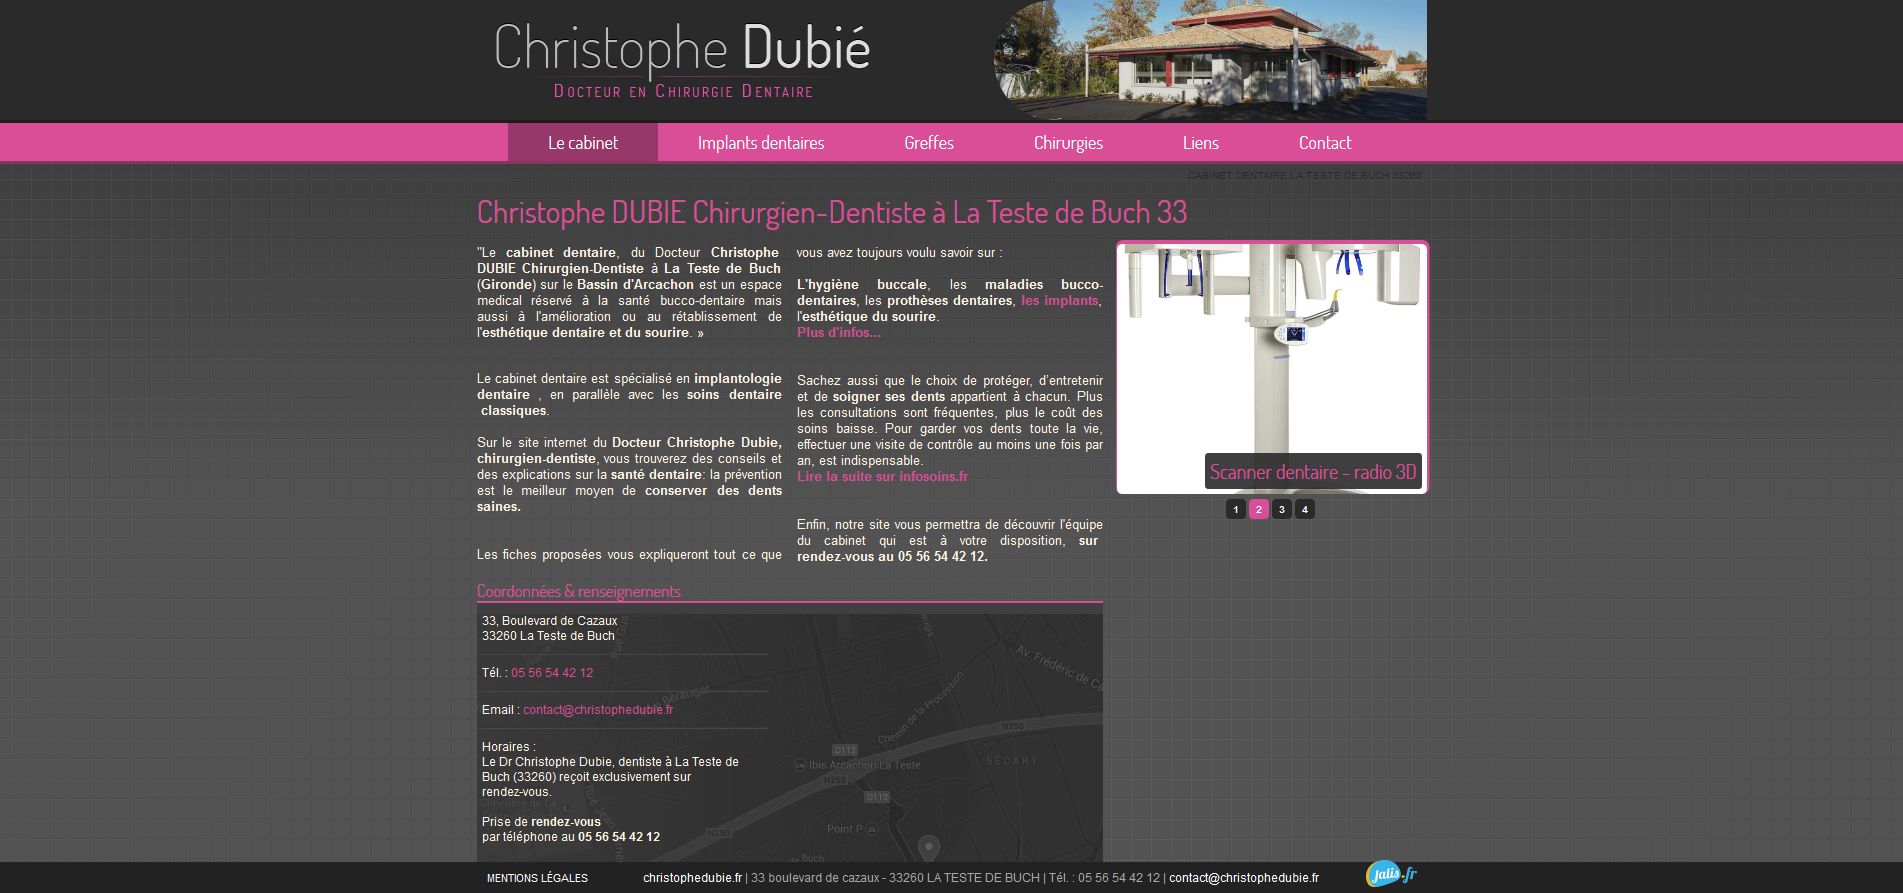 Christophe Dubié – Chirurgien-dentiste à La Teste de Buch